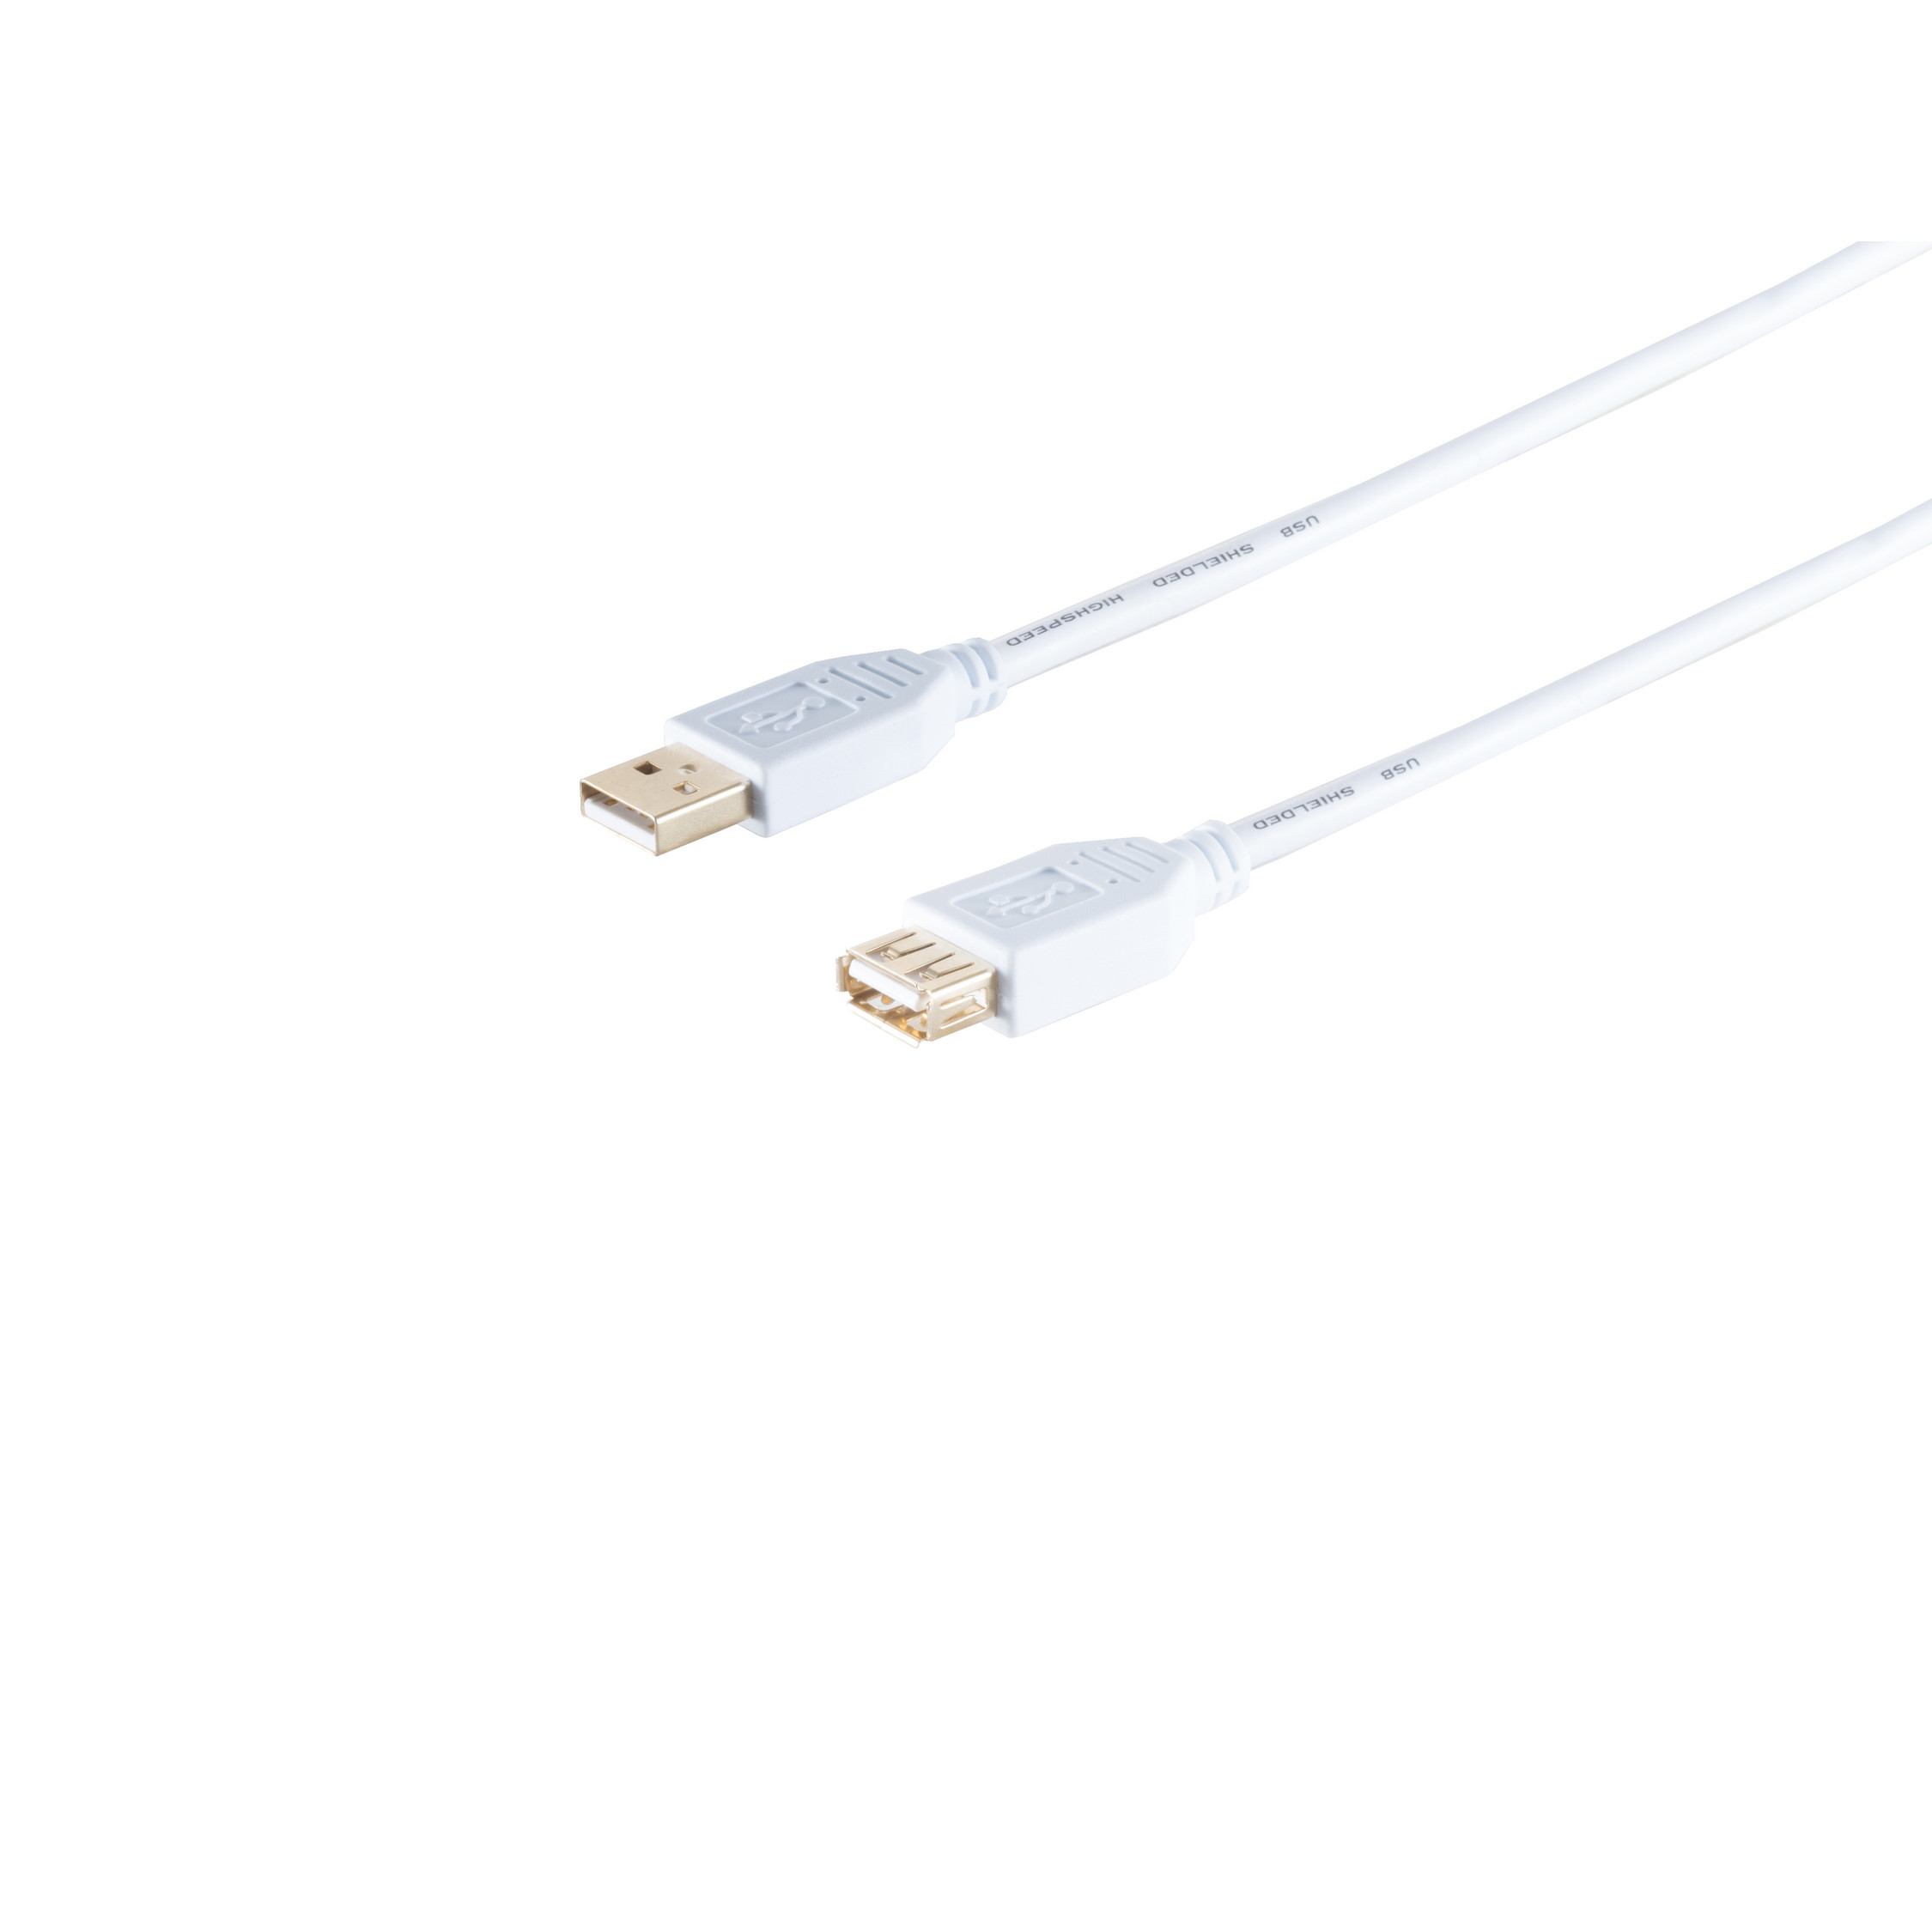 weiß, S/CONN 2.0 Verlängerung, A/A Buchse, High USB Kabel USB 2.0, Speed MAXIMUM CONNECTIVITY USB 1m